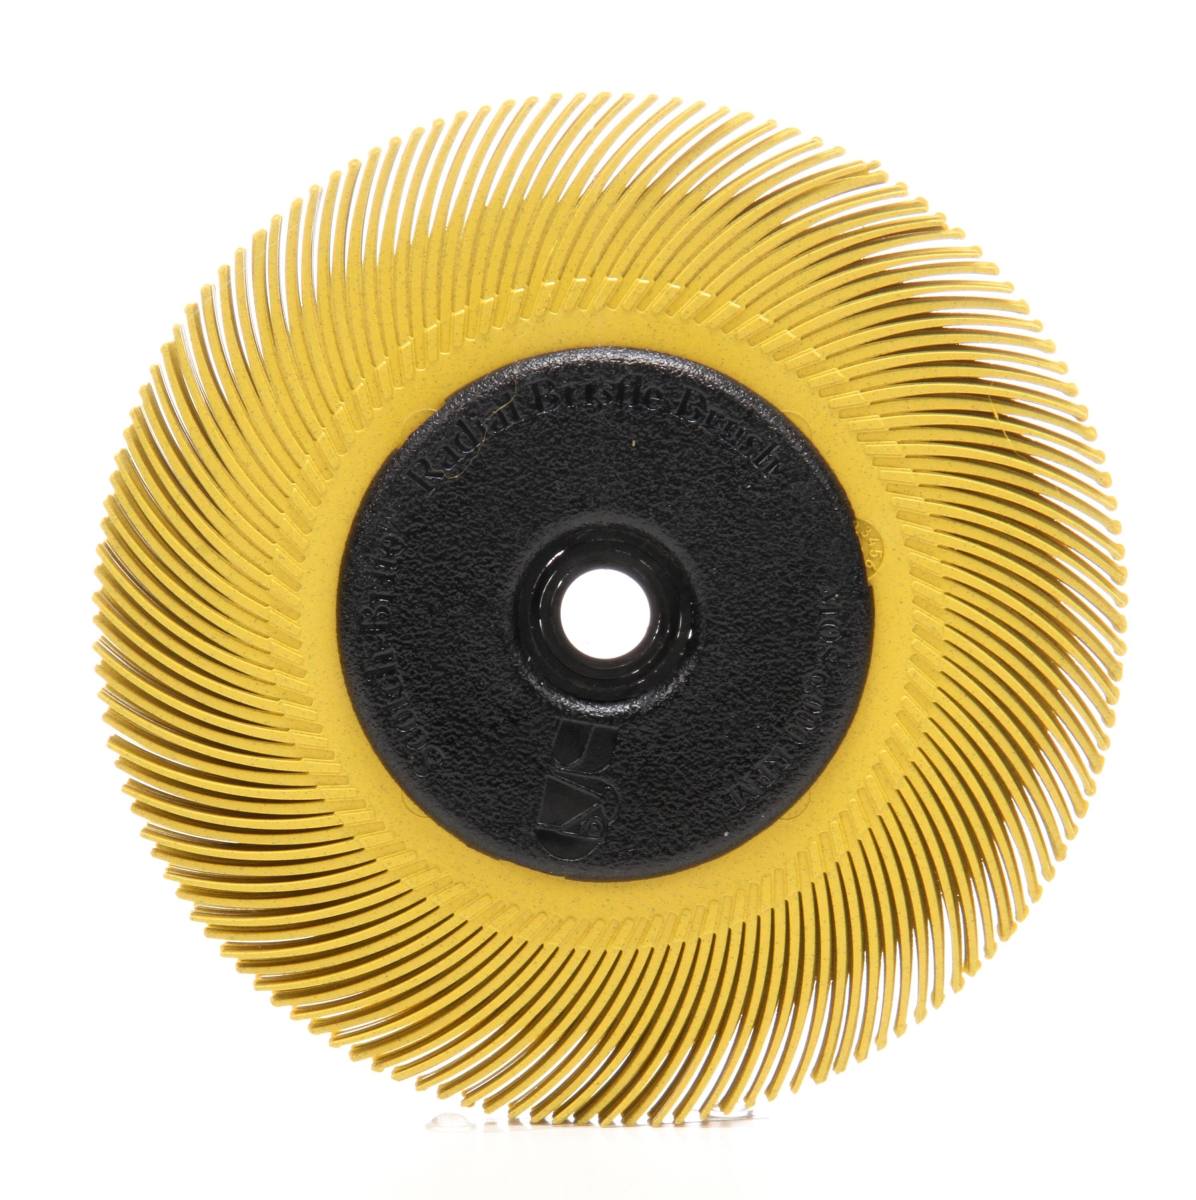 3M Scotch-Brite Radial Bristle Disc BB-ZB mit Flansch, gelb, 193,5 mm, P80, Typ C #33129